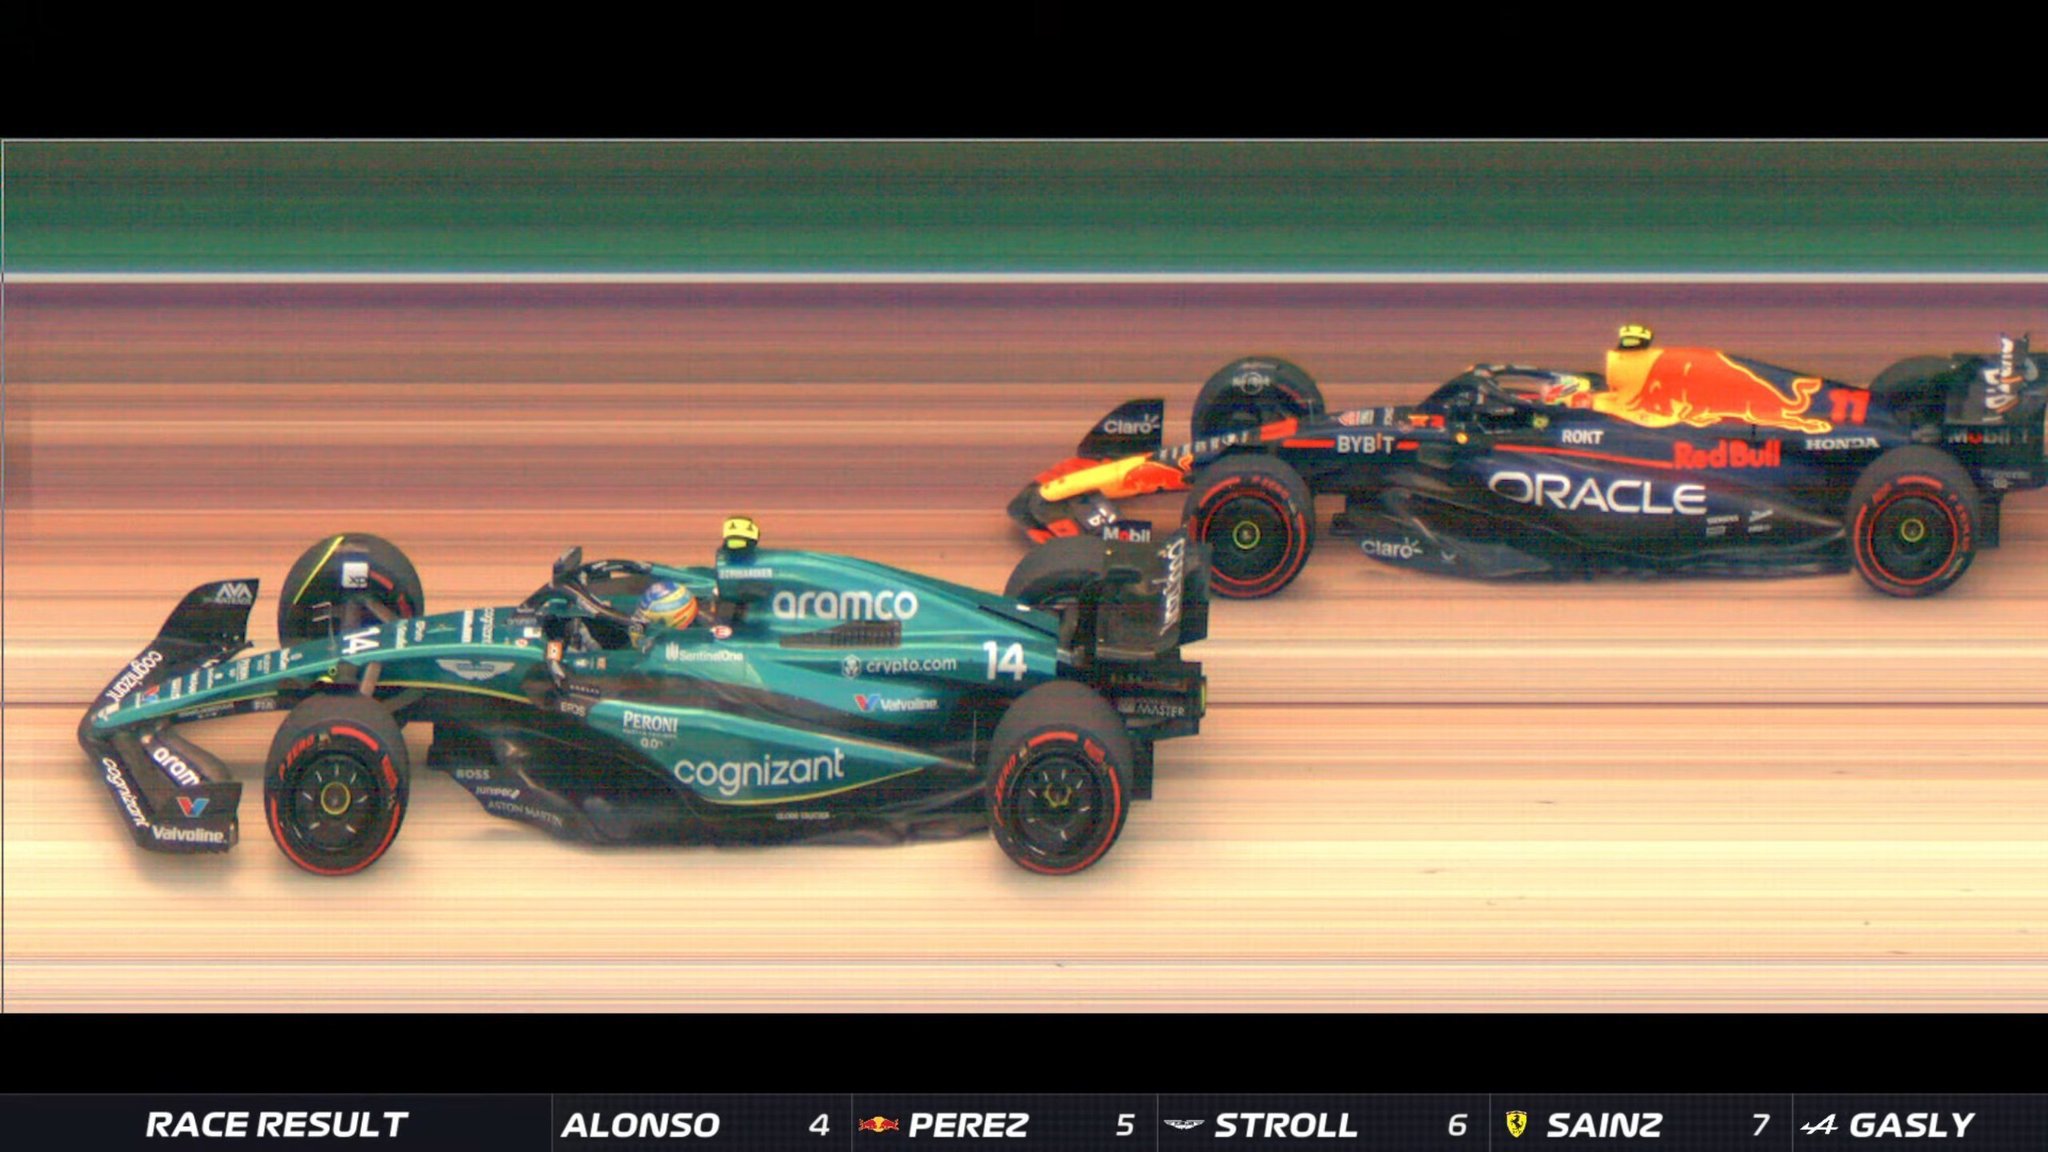 Foto finish de Fernando Alonso y Checo Prez en el GP de Brasil